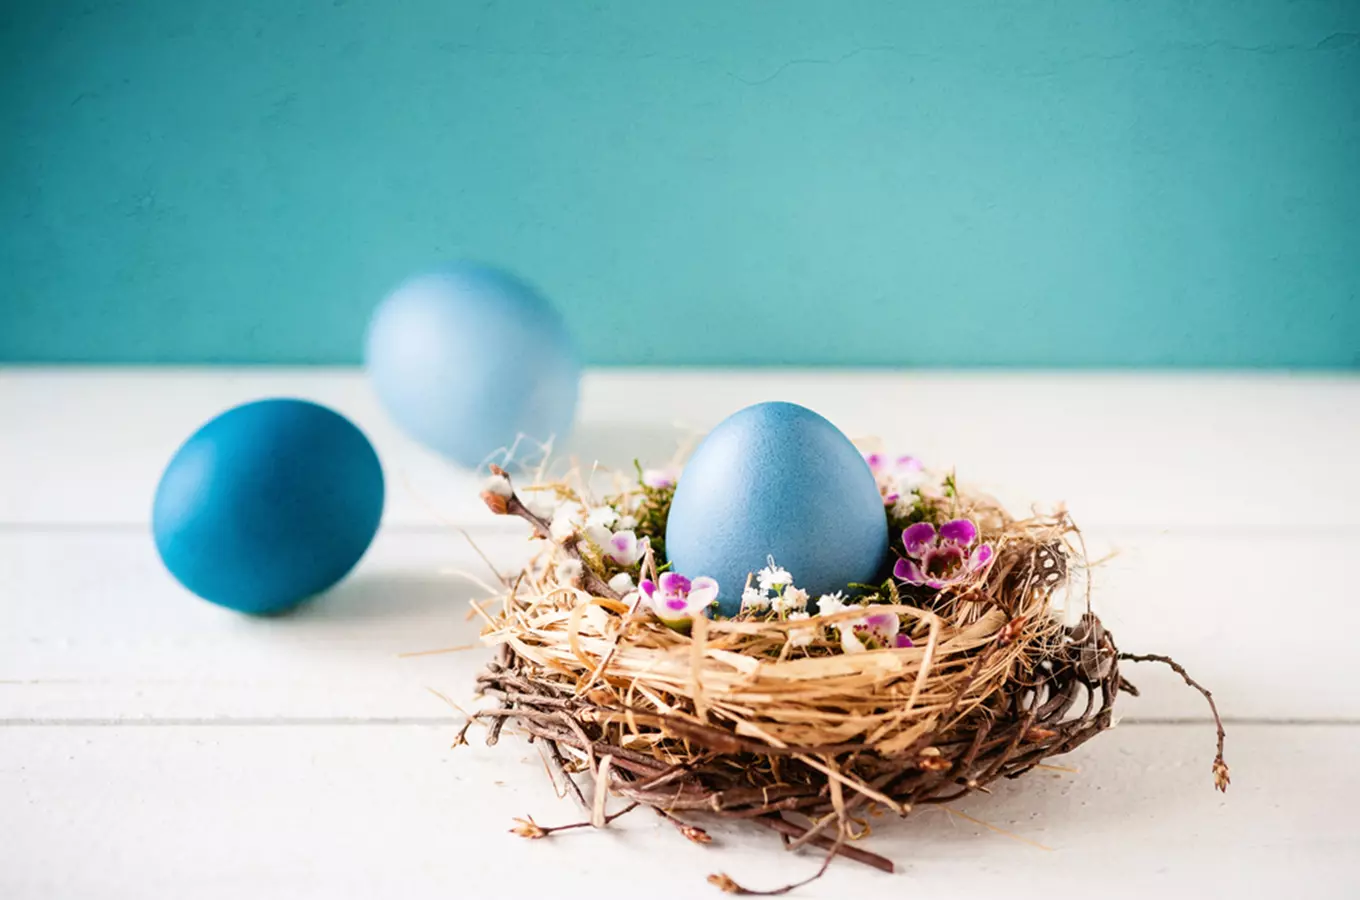 Velikonoce: tipy na velikonoční pečení, zdobení vajíček a tradiční zvyky